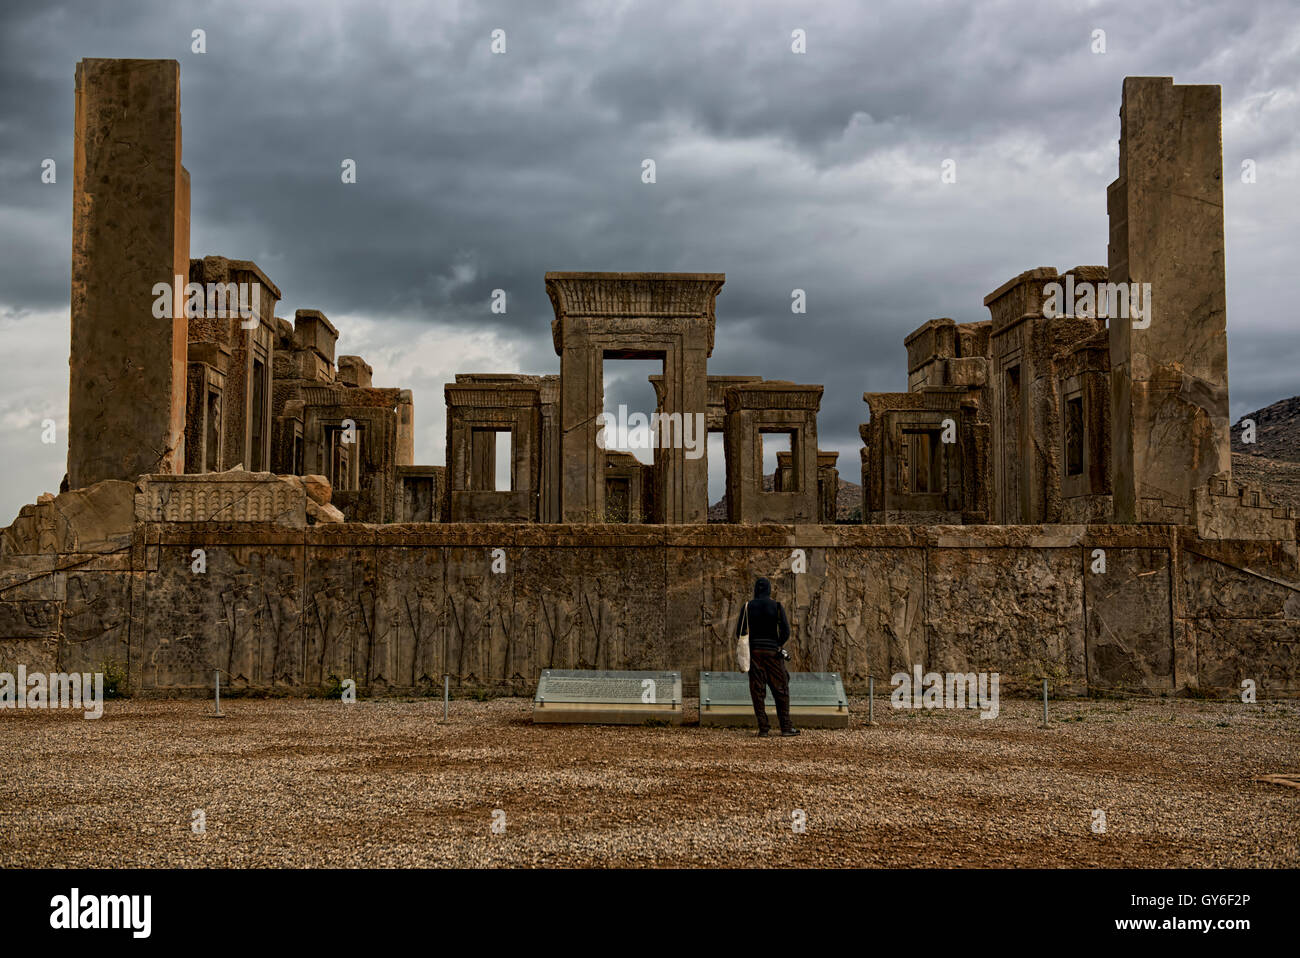 Ruins of the Tachara, Persepolis Stock Photo